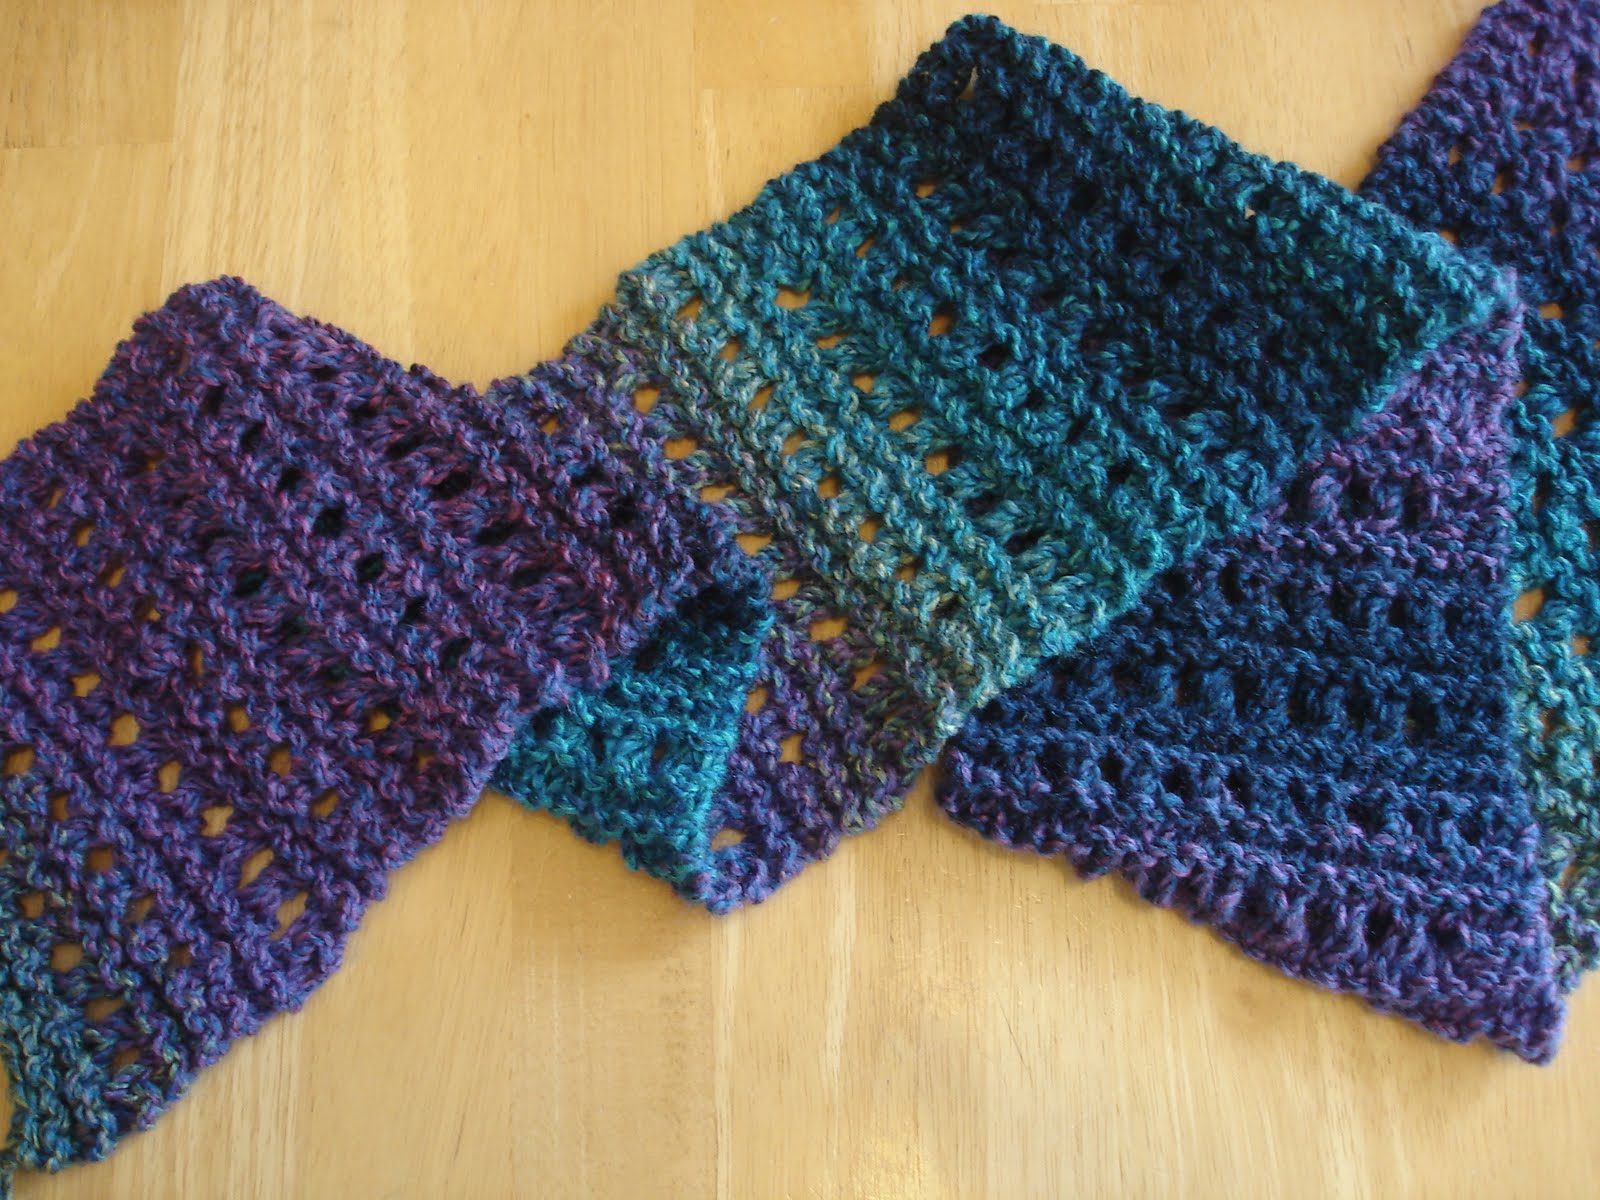 Free Knitting Patterns free knitting patterns qolfwkn